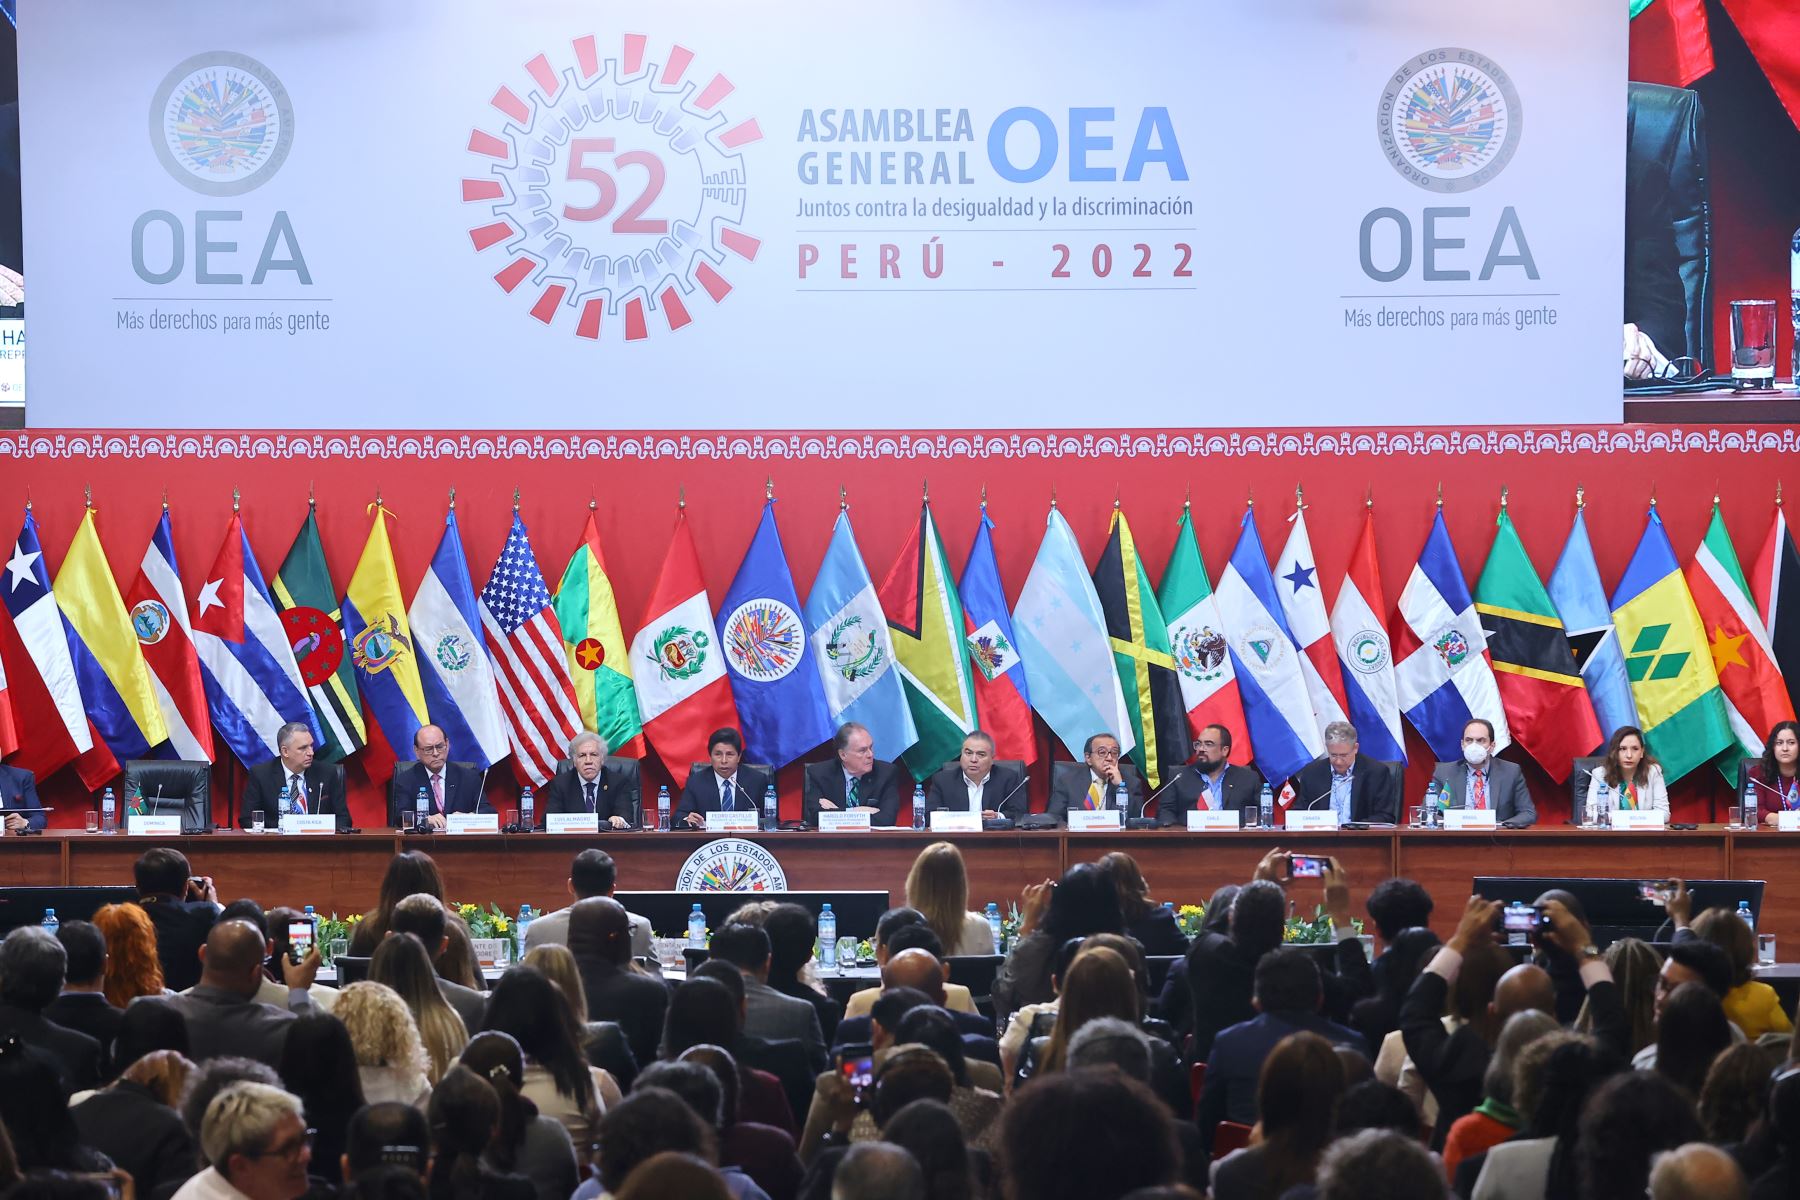 Presidente de la República Pedro Castillo inauguró la 52 Asamblea General de la OEA en Lima.Foto: ANDINA/Andrés Valle